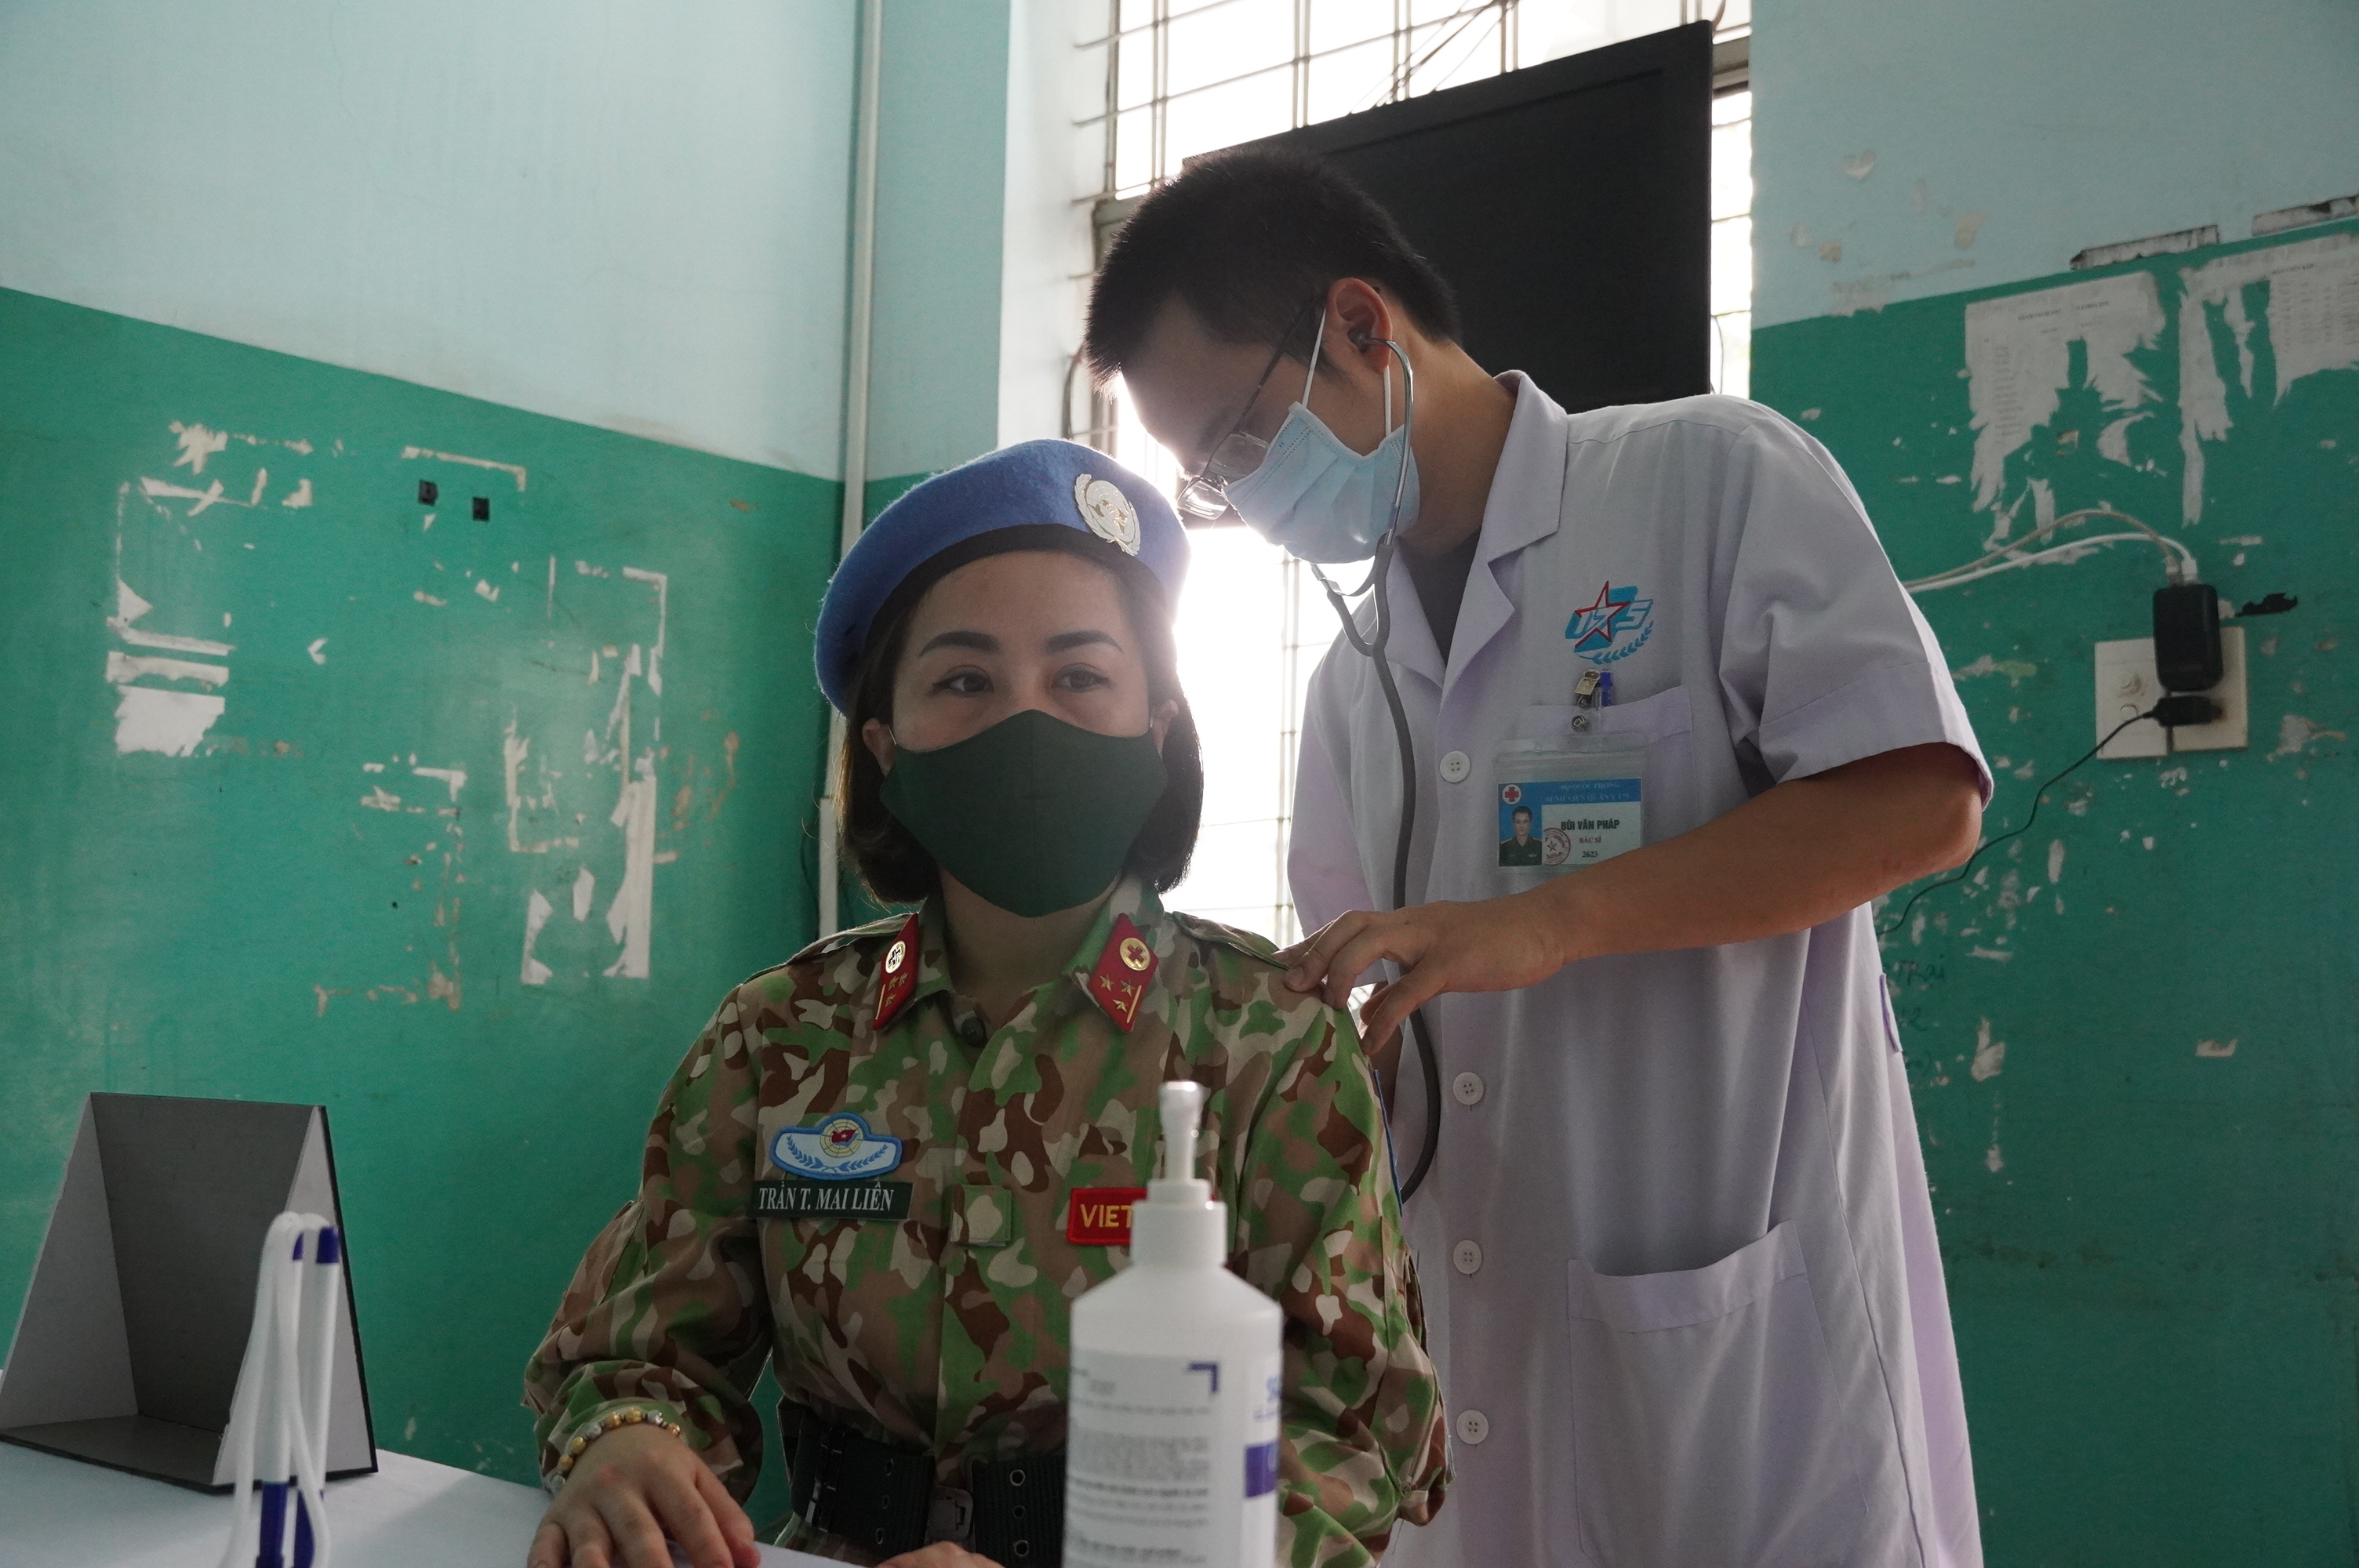 Bệnh viện Quân y 175 tiêm vaccine Covid-19 cho các quân nhân chuẩn bị nhận nhiệm vụ tại Nam Sudan - Ảnh 2.